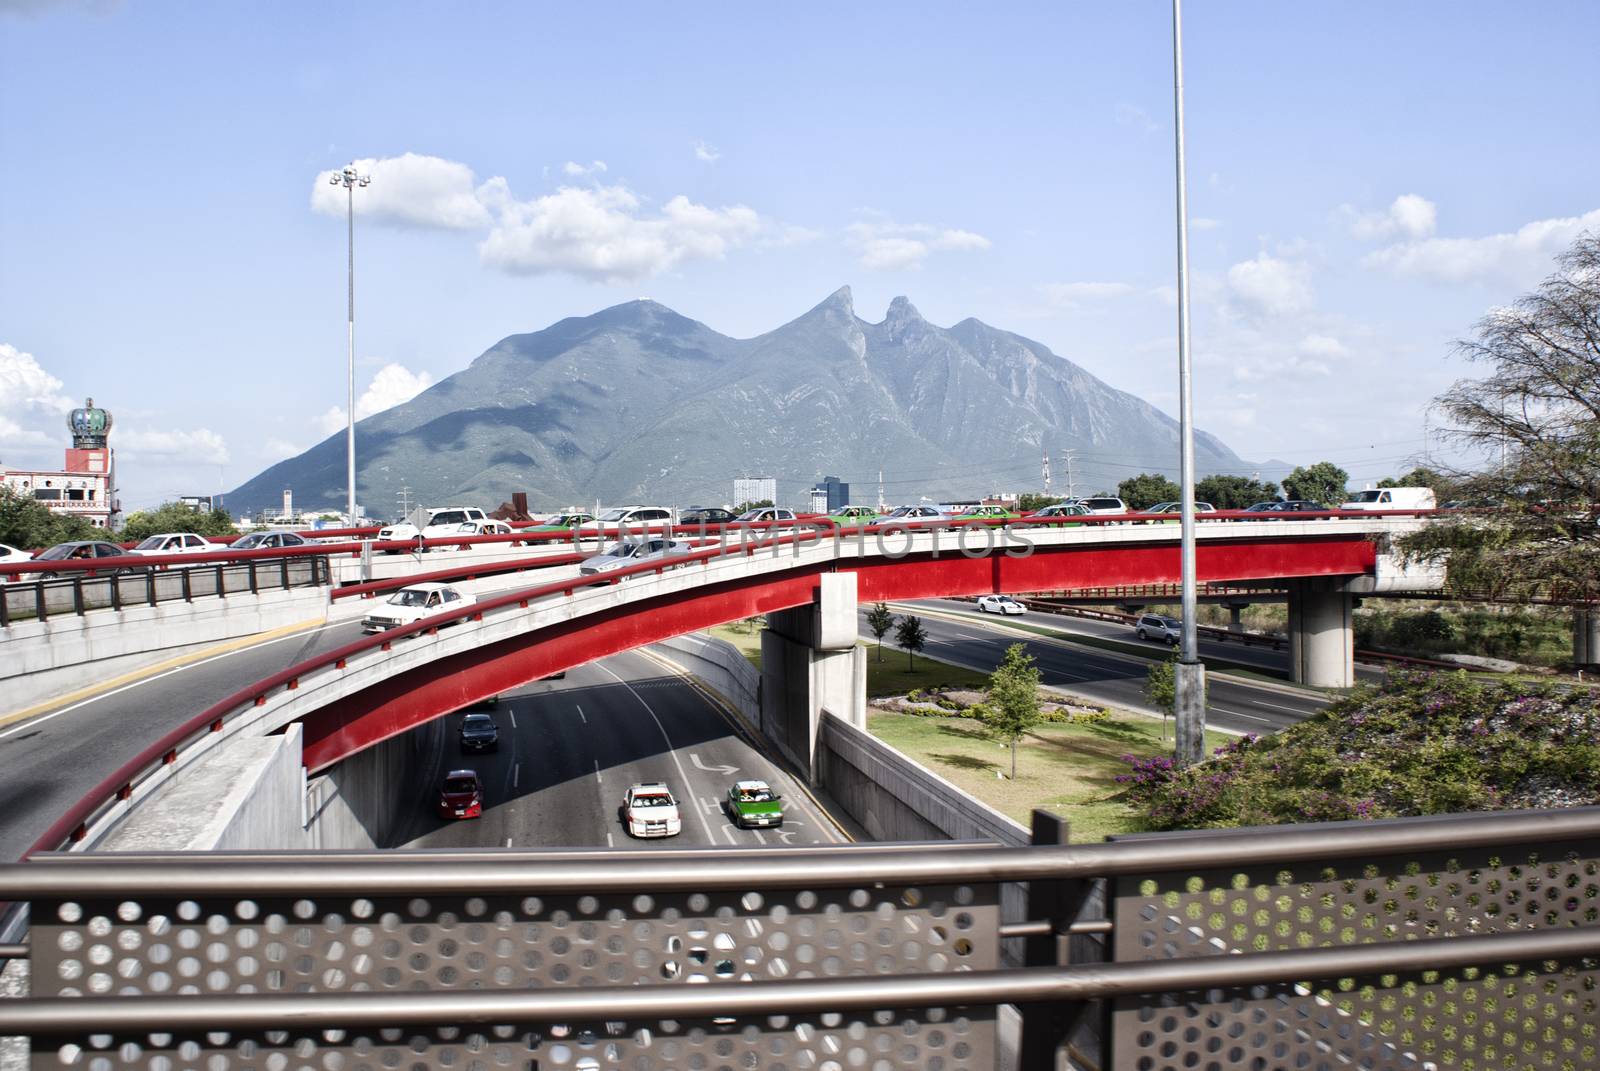 Photograph of the city of Monterrey Mexico and its characteristic "Cerro de la Silla" mountain